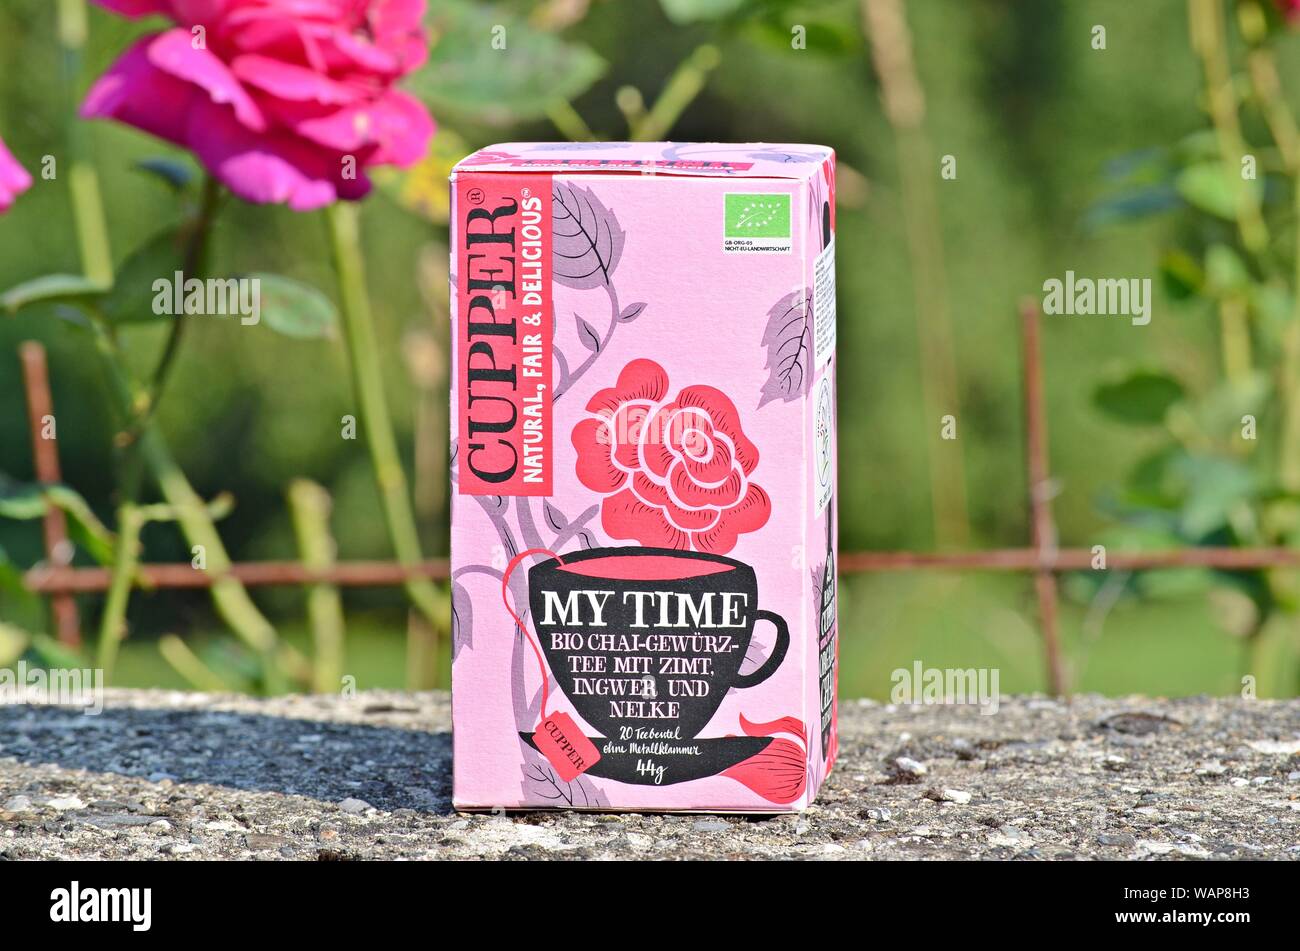 Embalaje de cobre 'Mi tiempo' Tea mezcla de canela, jengibre, cardamomo y clavo, fotografiado en una valla, muro de hormigón en una aldea de Montenegro Foto de stock